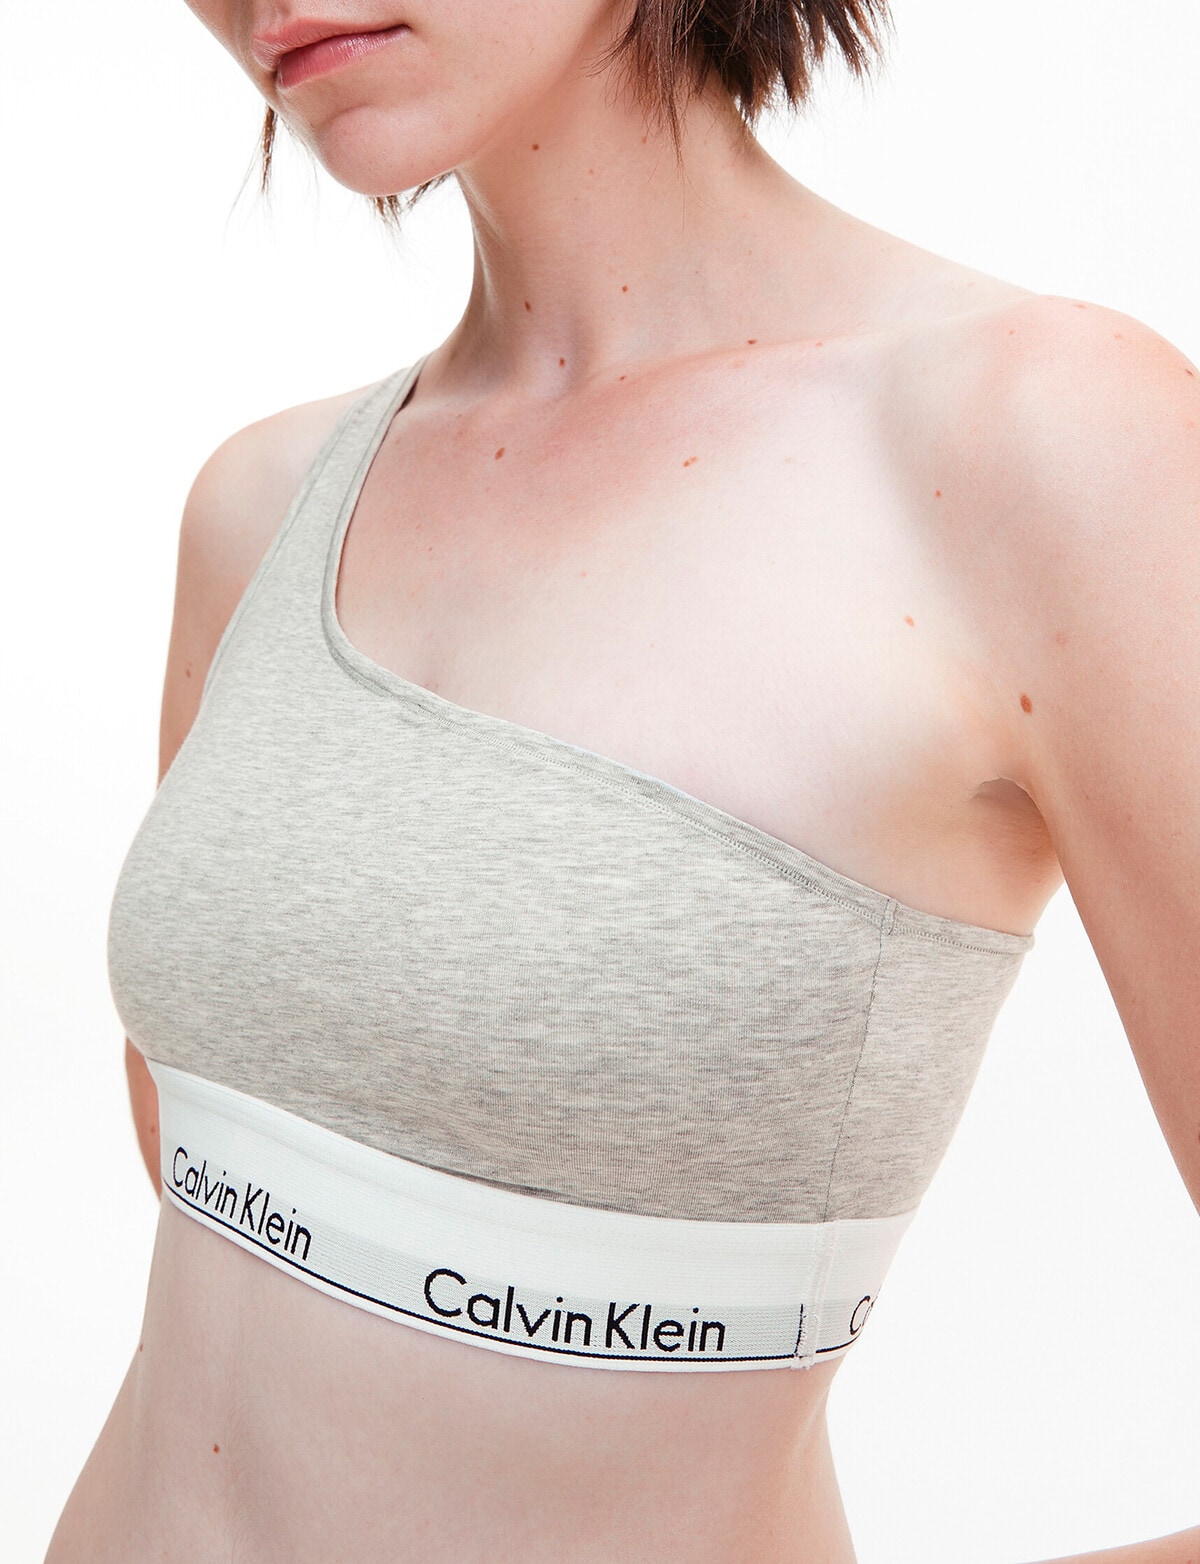 Calvin Klein Underwear Modern Cotton One Shoulder Bralette Grey Heather  Women's